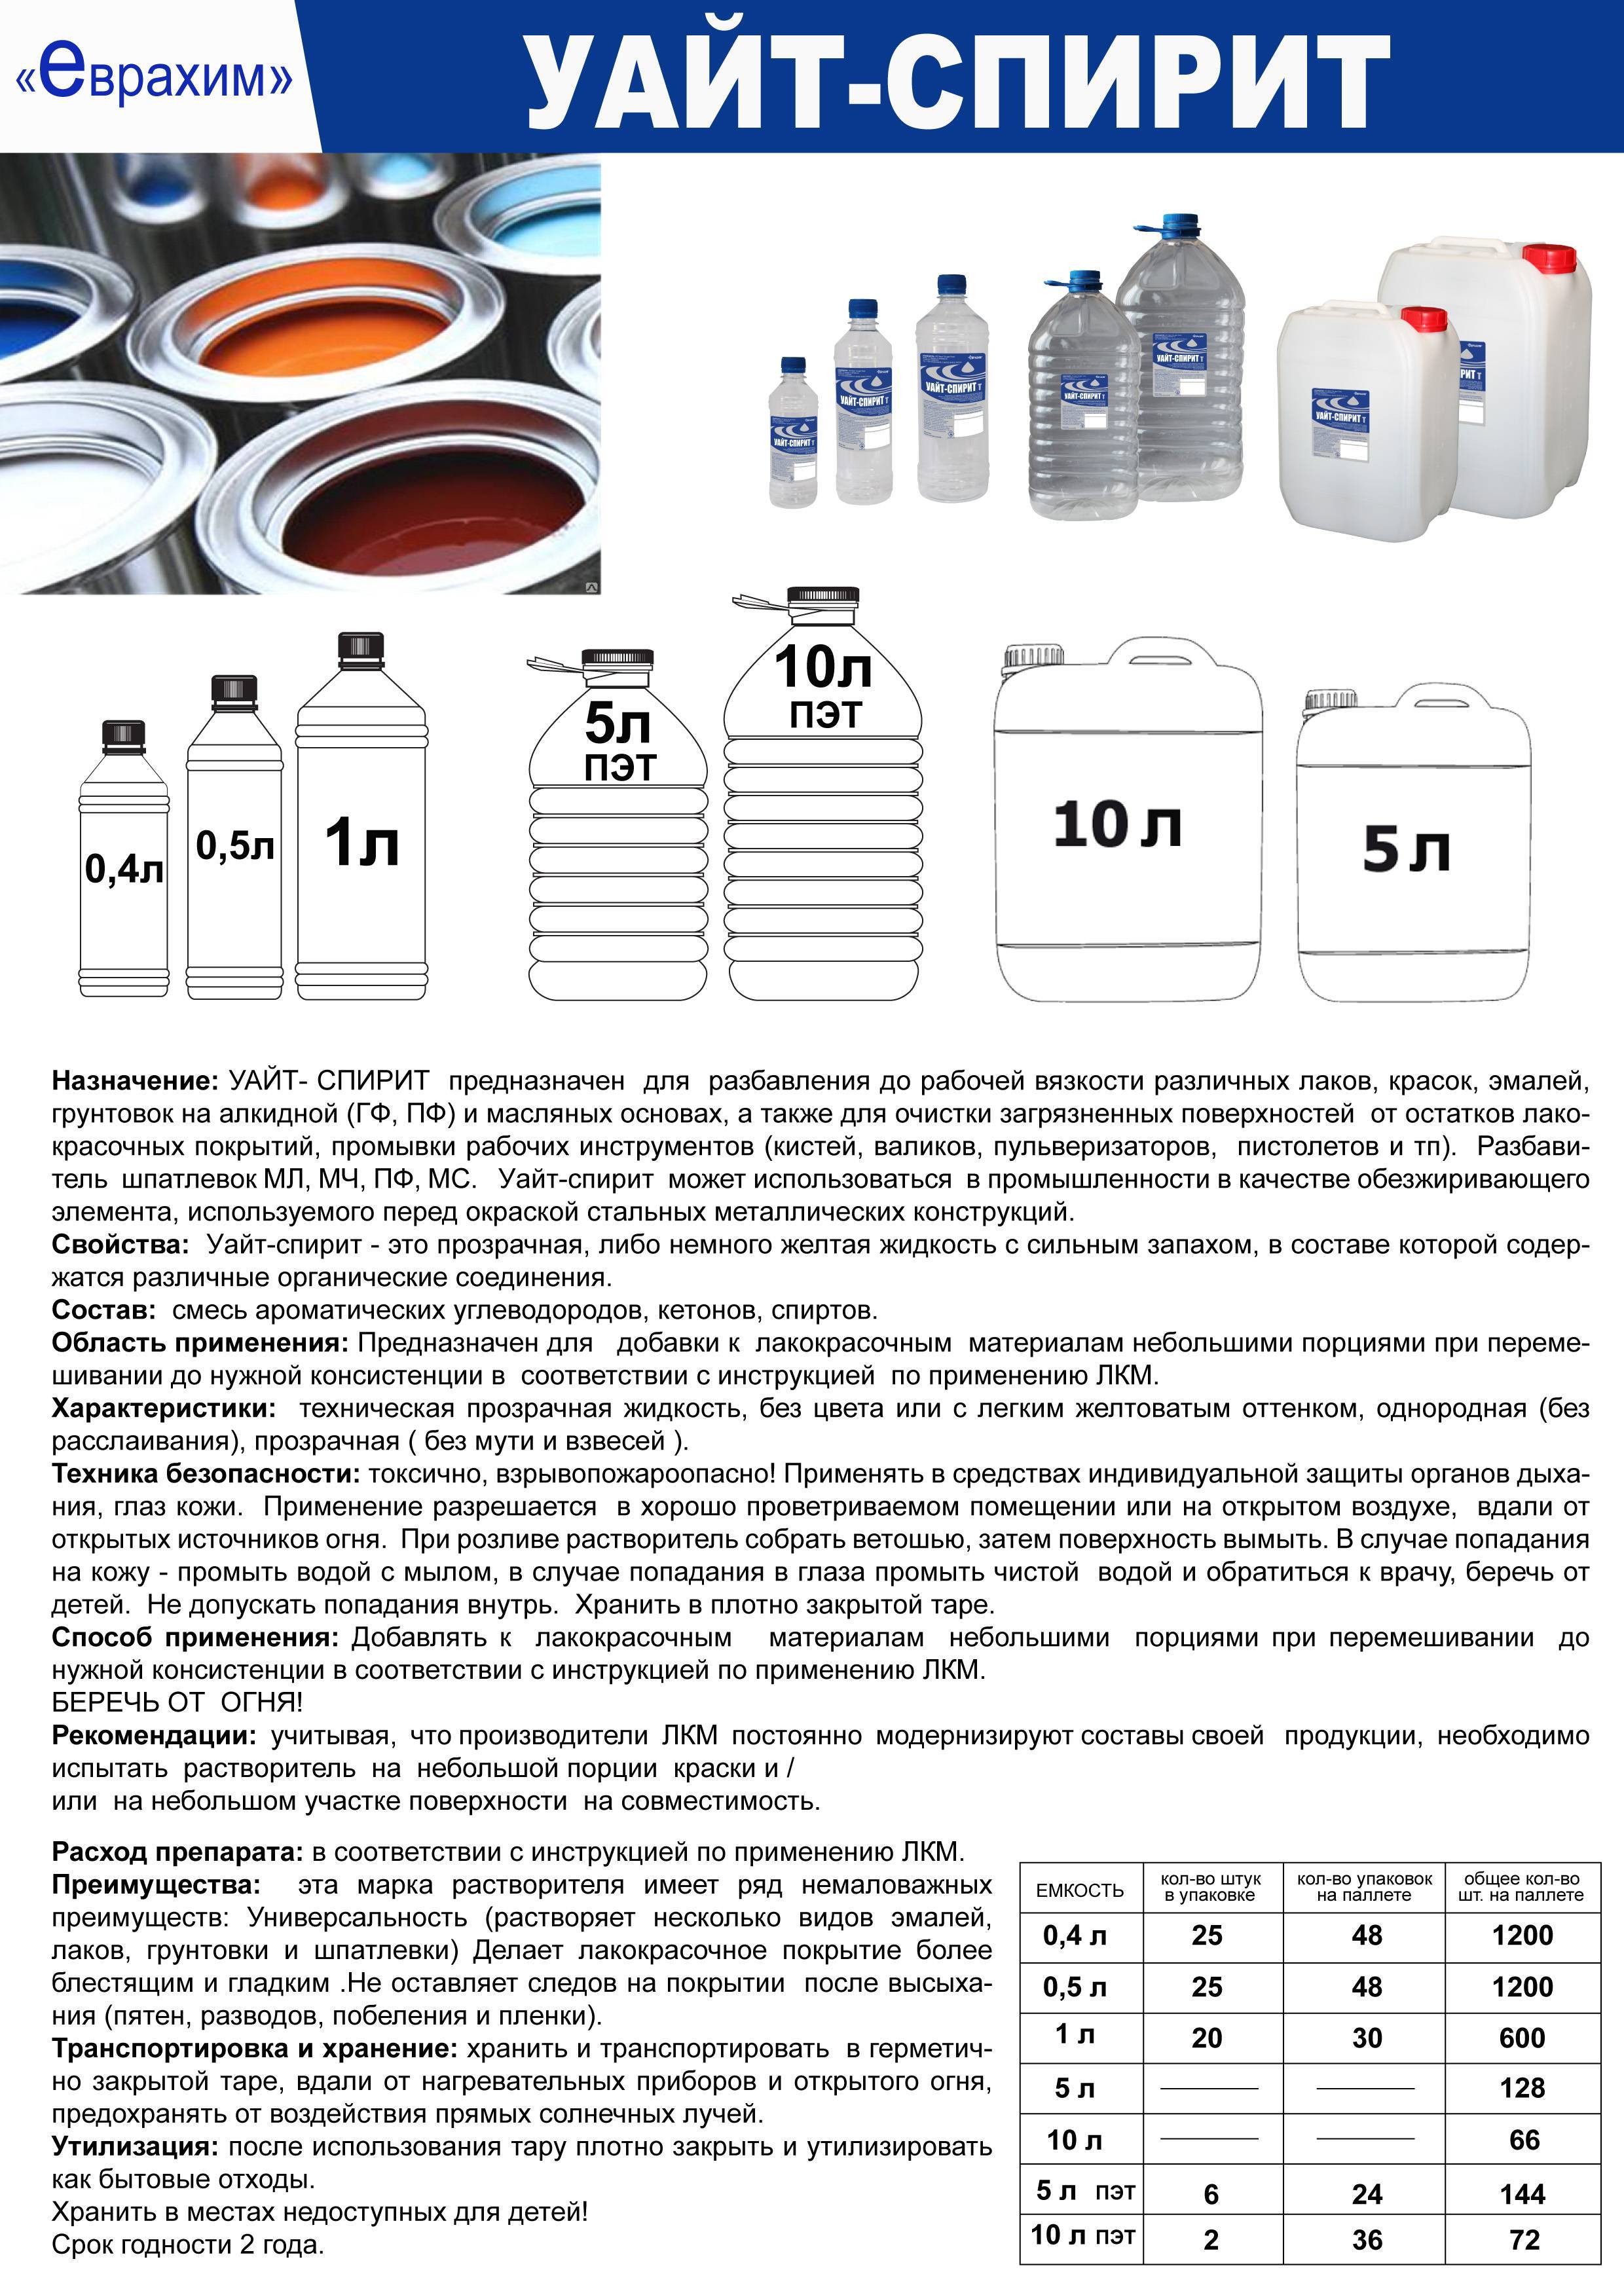 Применение уайт спирита и его характеристики | статья на бизнес-портале elport.ru